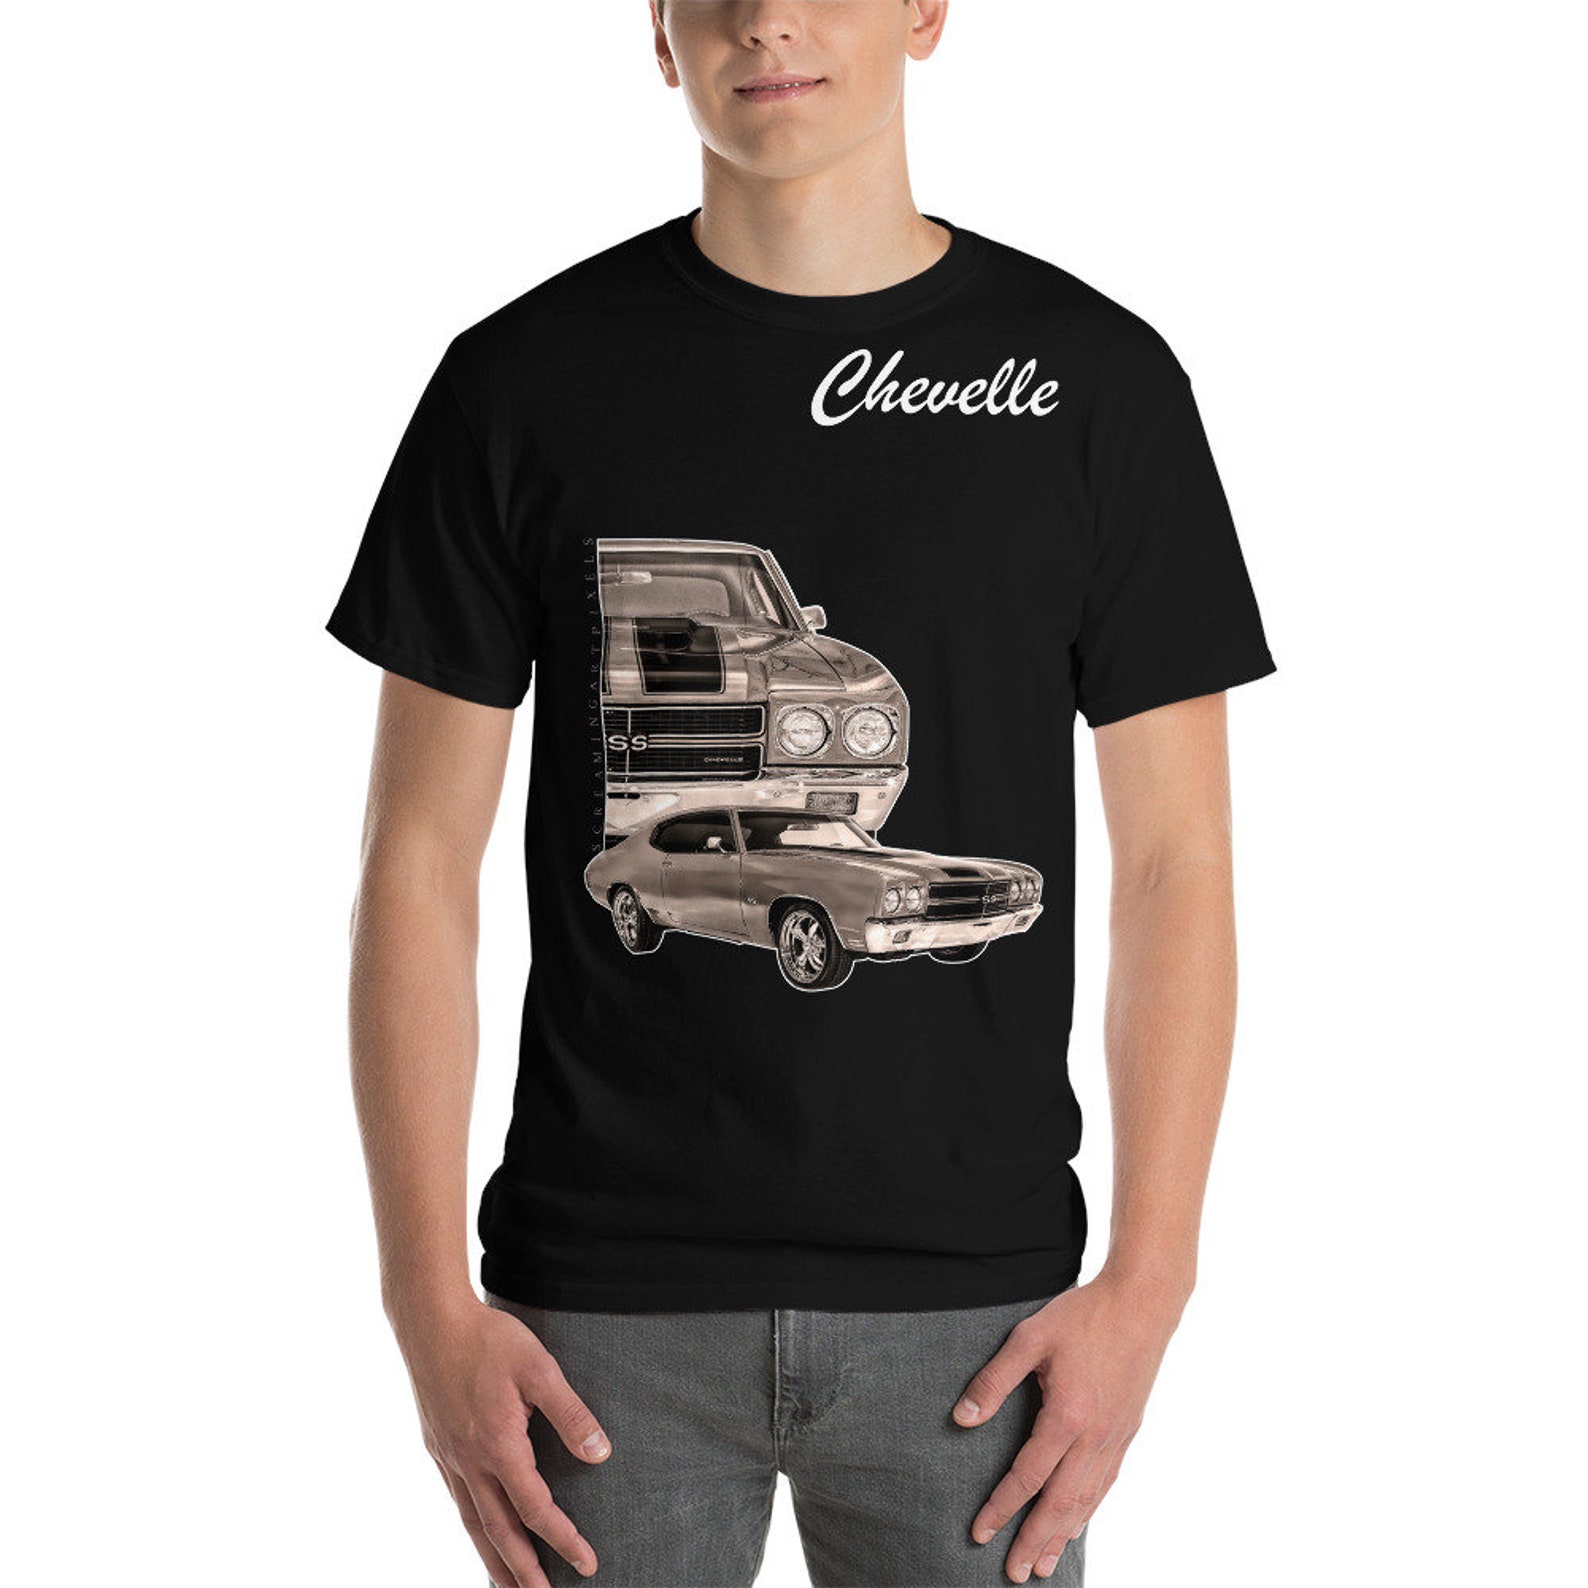 Chevy Chevelle Chevelle Shirt Chevelle T Shirt Chevelle SS - Etsy